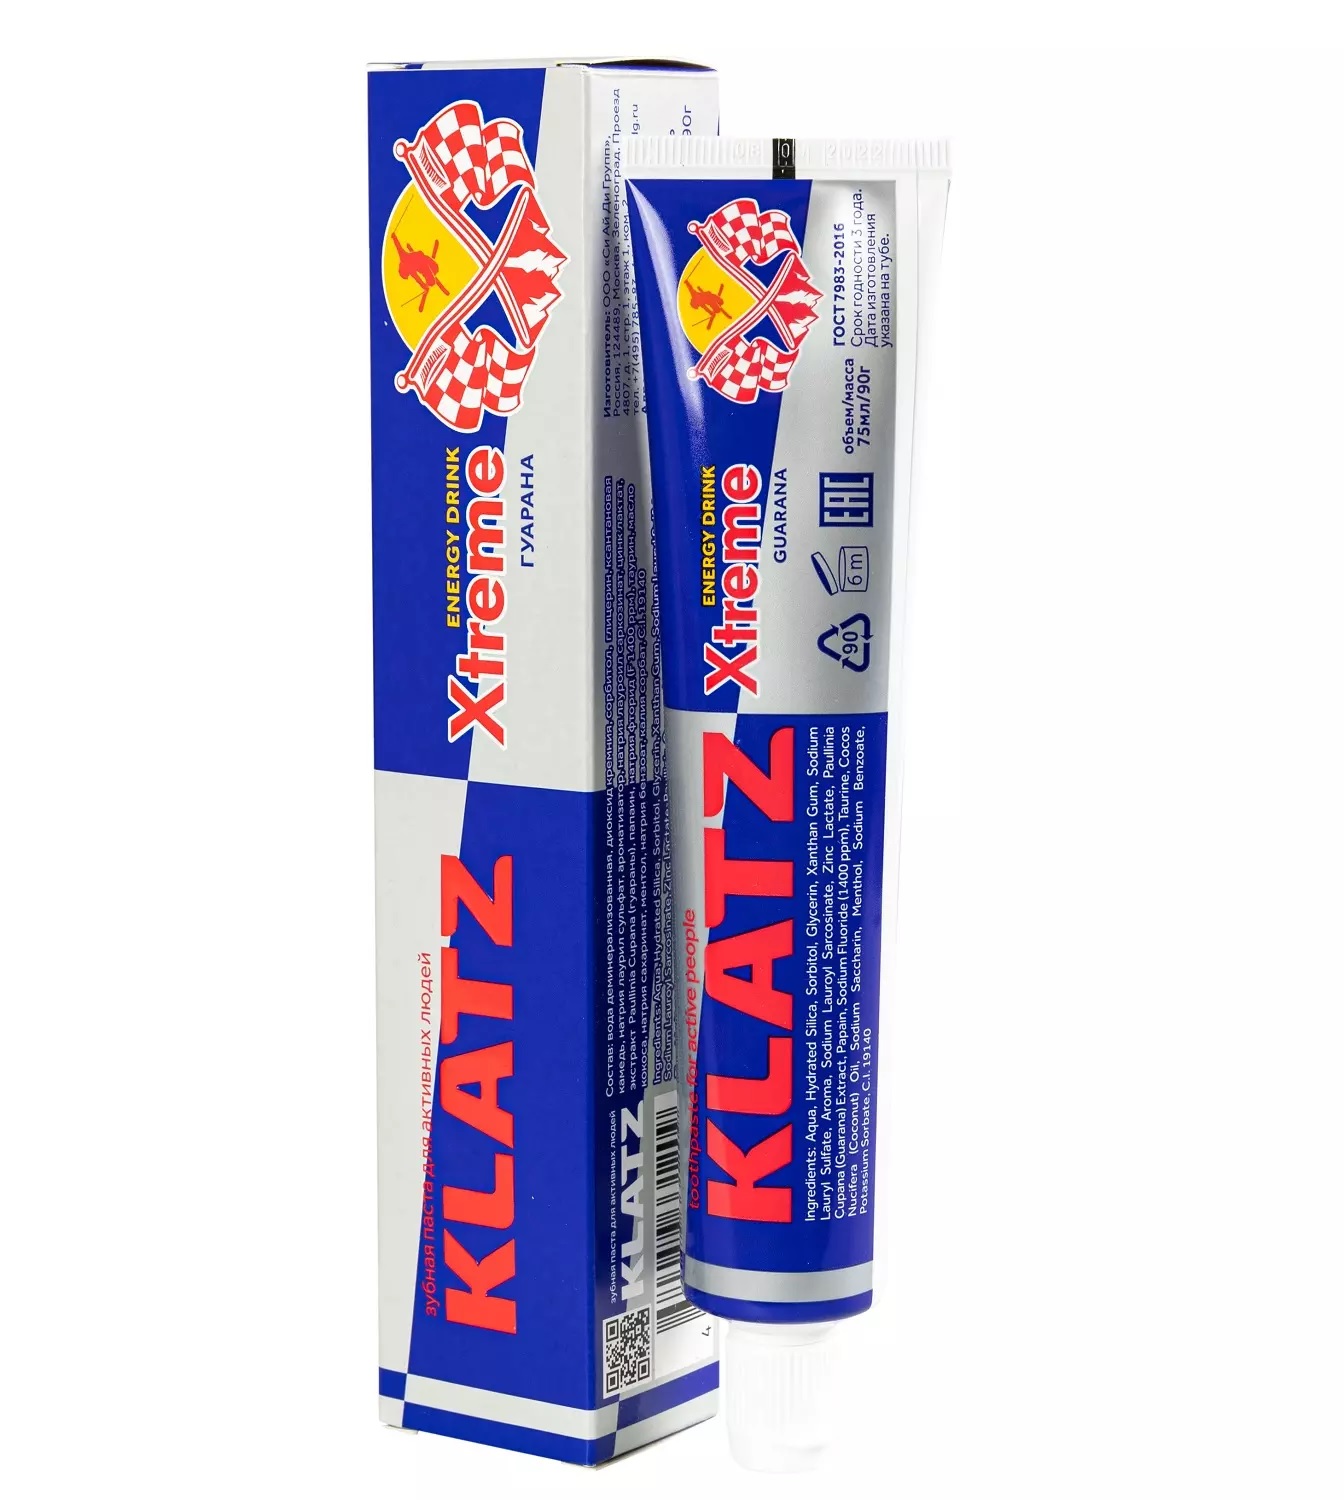 Паста зубная Klatz X-treme Energy Drink для активных людей, гуарана, 75 мл klatz зубная паста для активных людей гуарана 75 мл